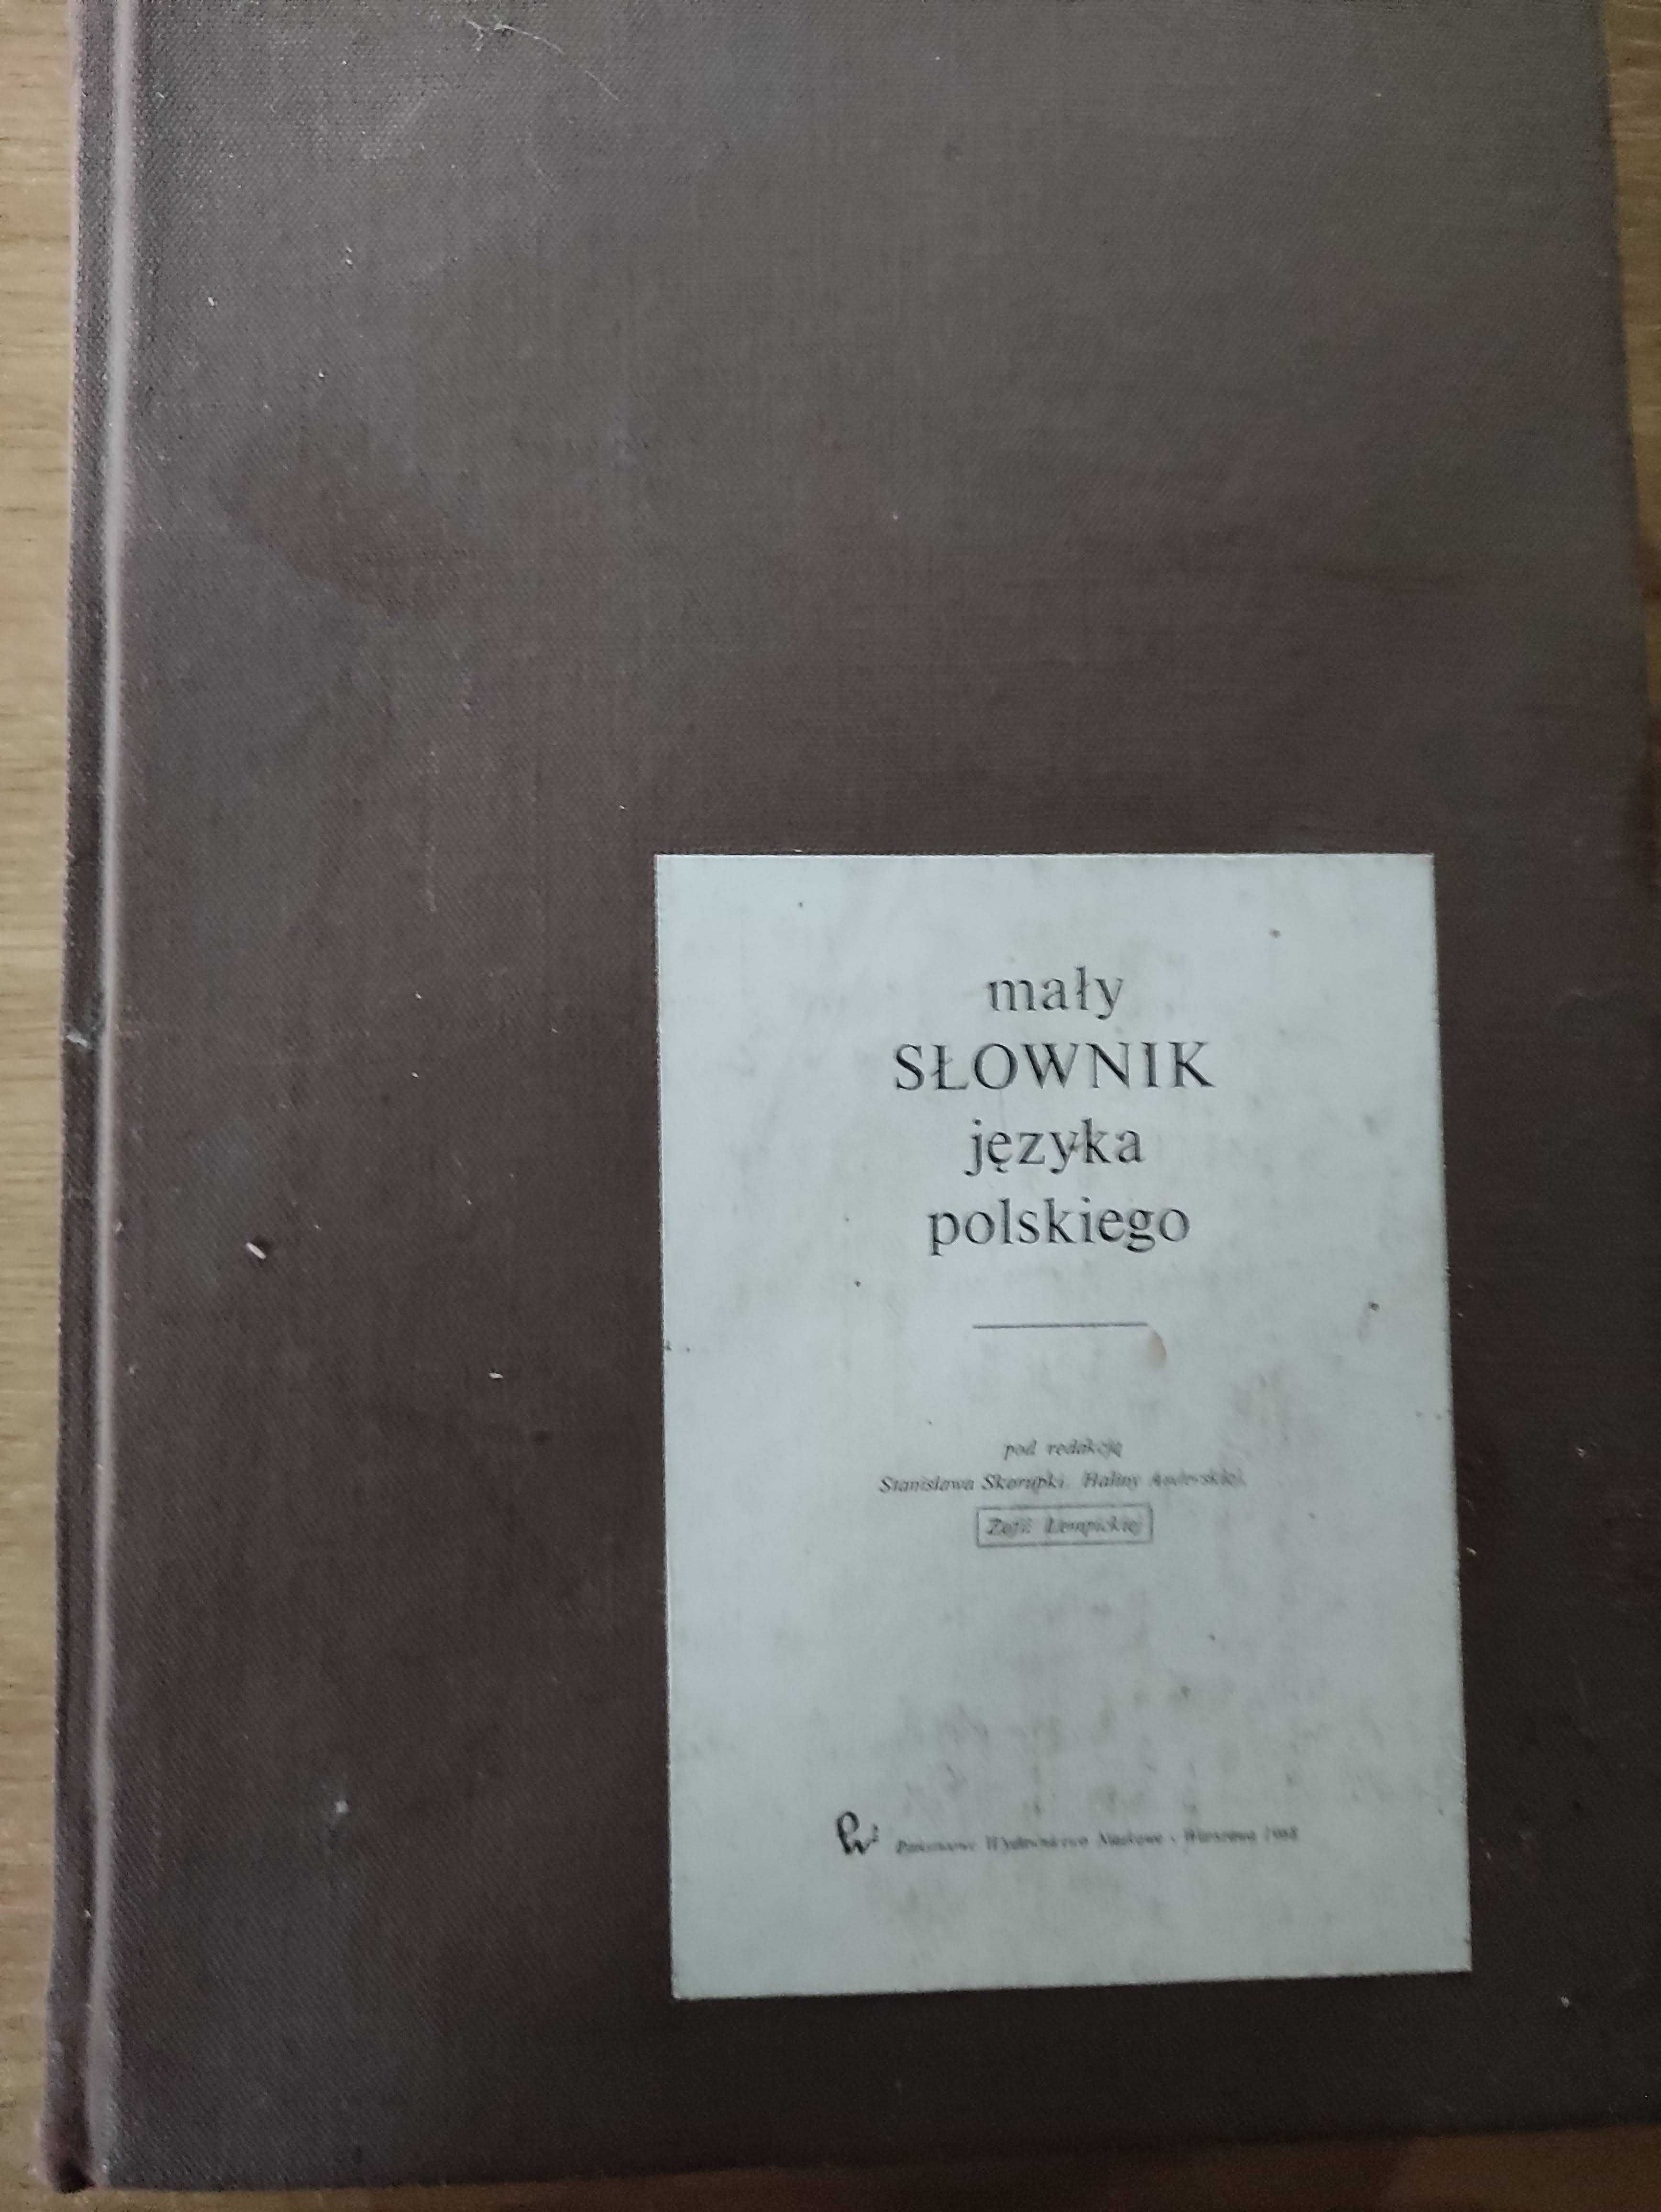 Mały słownik języka polskiego - S. Skorupka, H. Auderska, Z. Łempicka